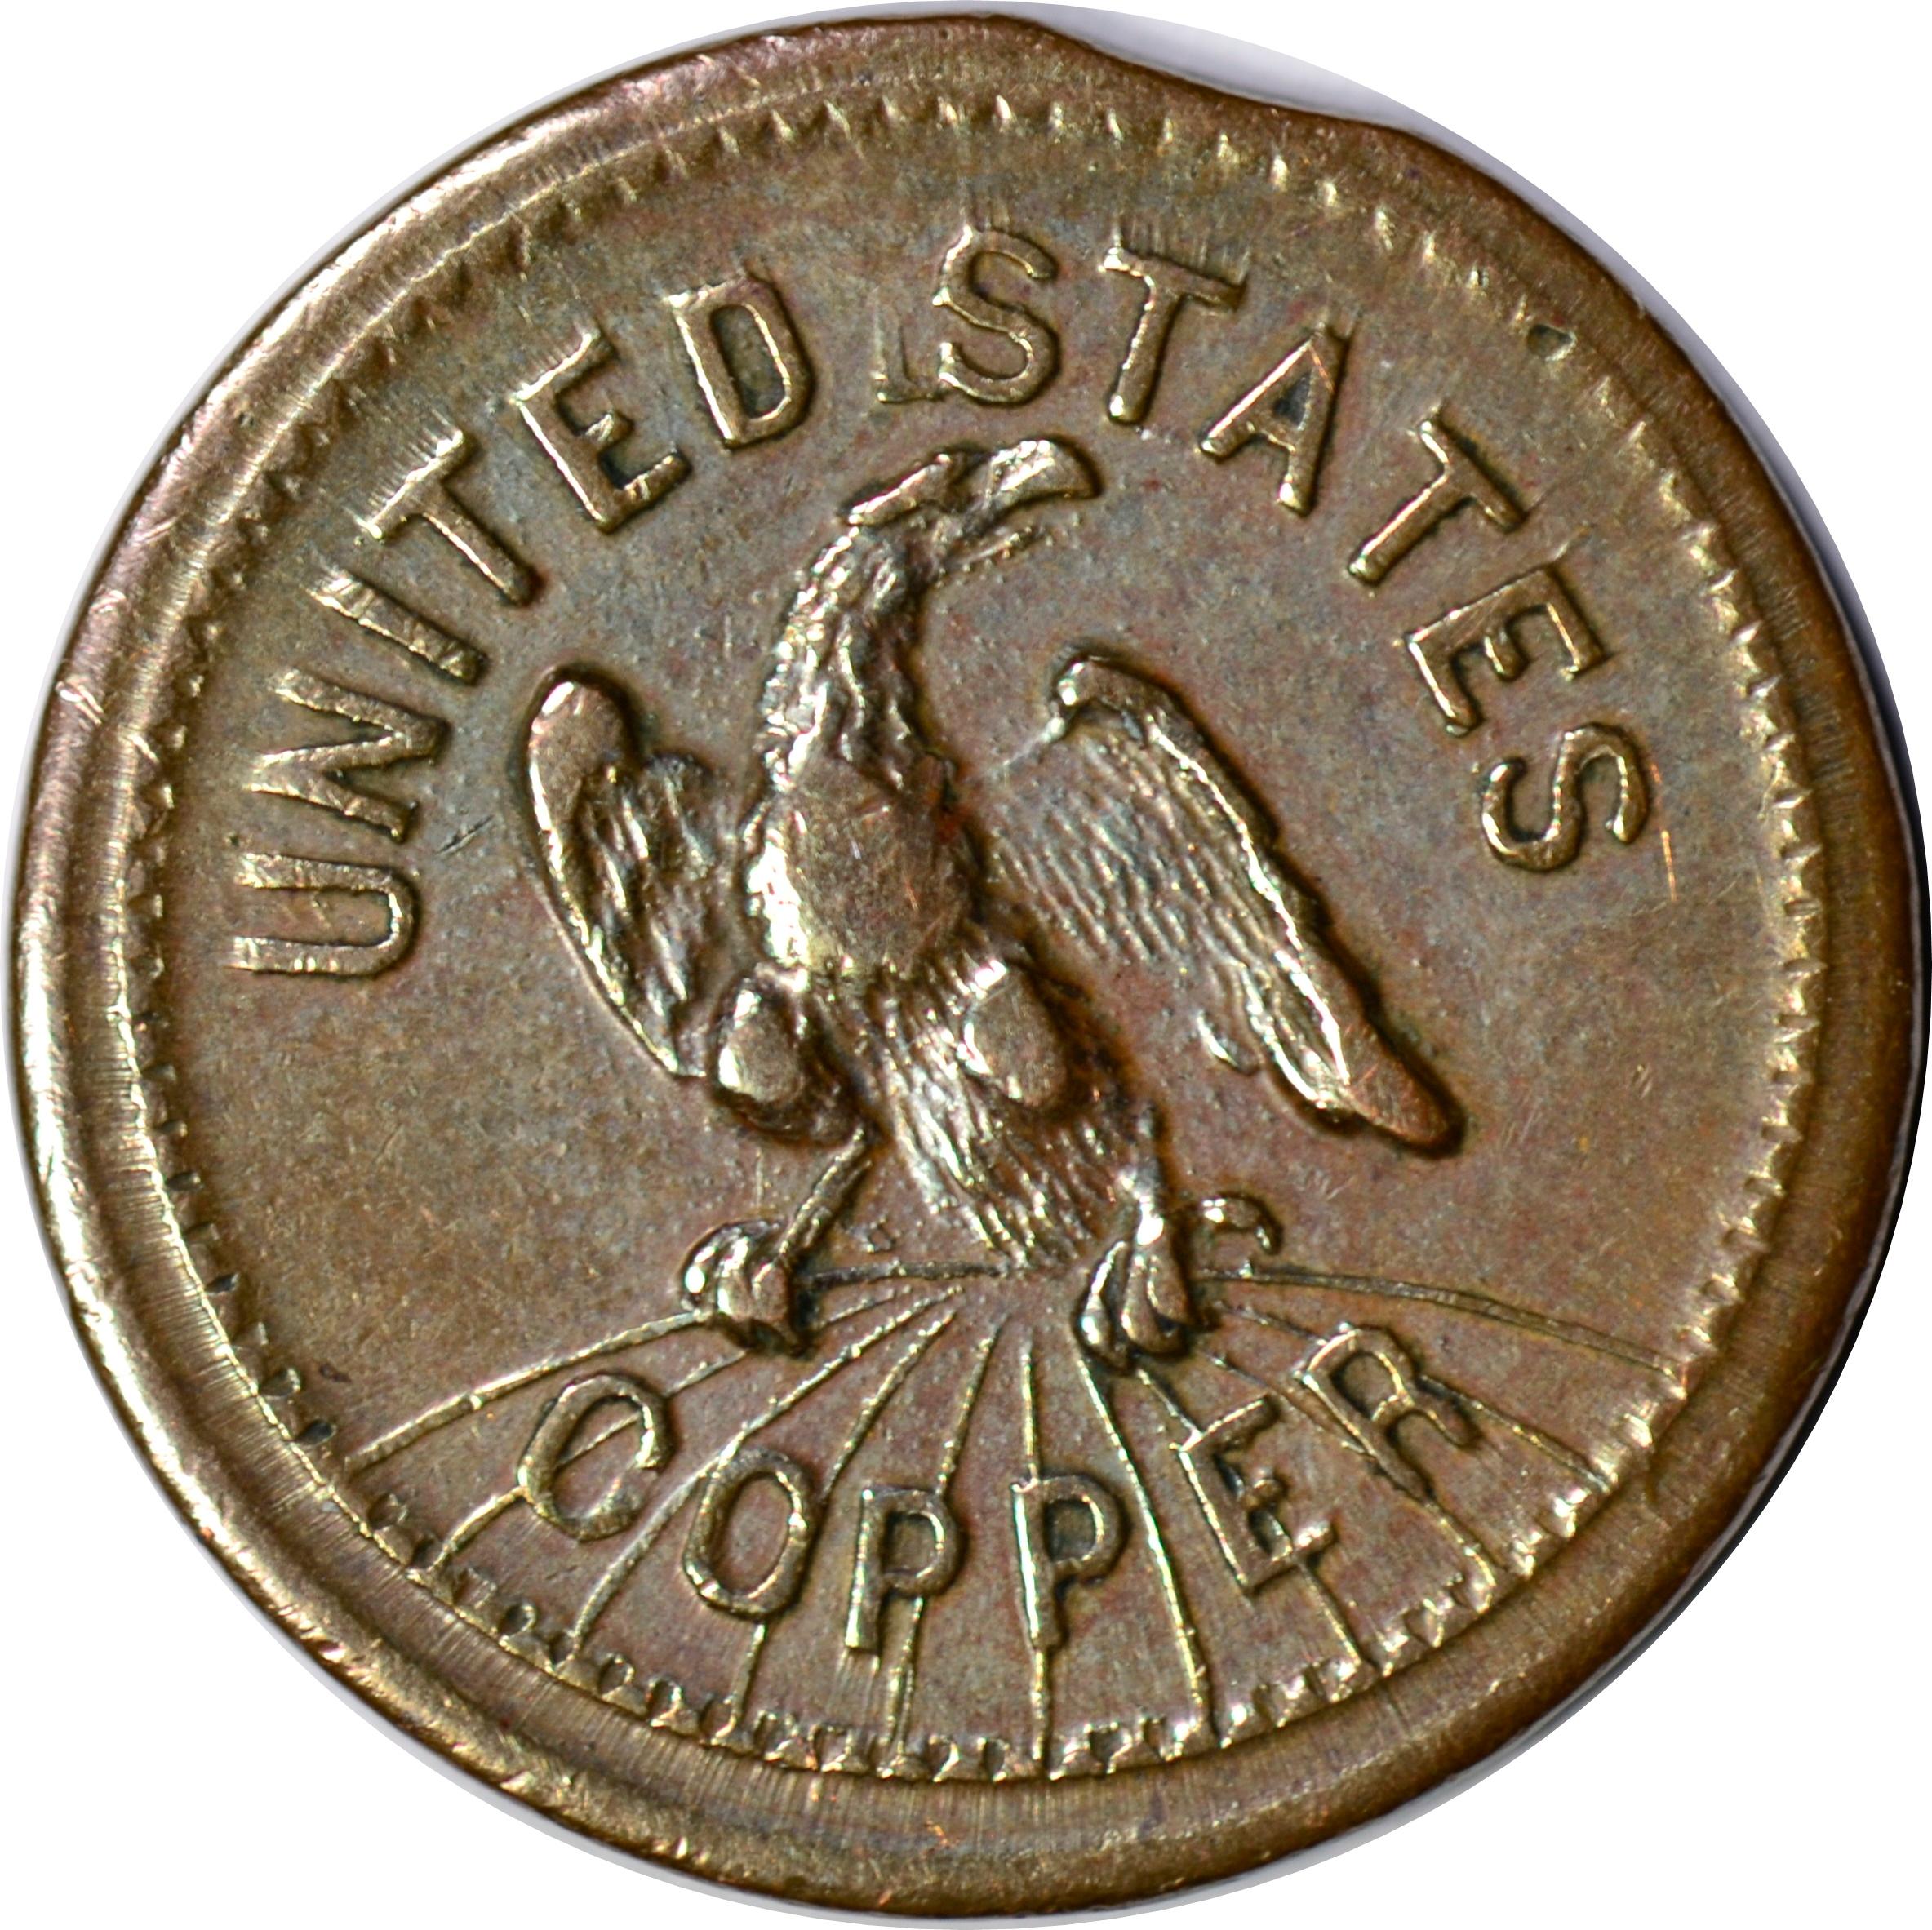 1863 CIVIL WAR TOKEN - MONEY MAKES THE MARE GO - UNITED STATES COPPER